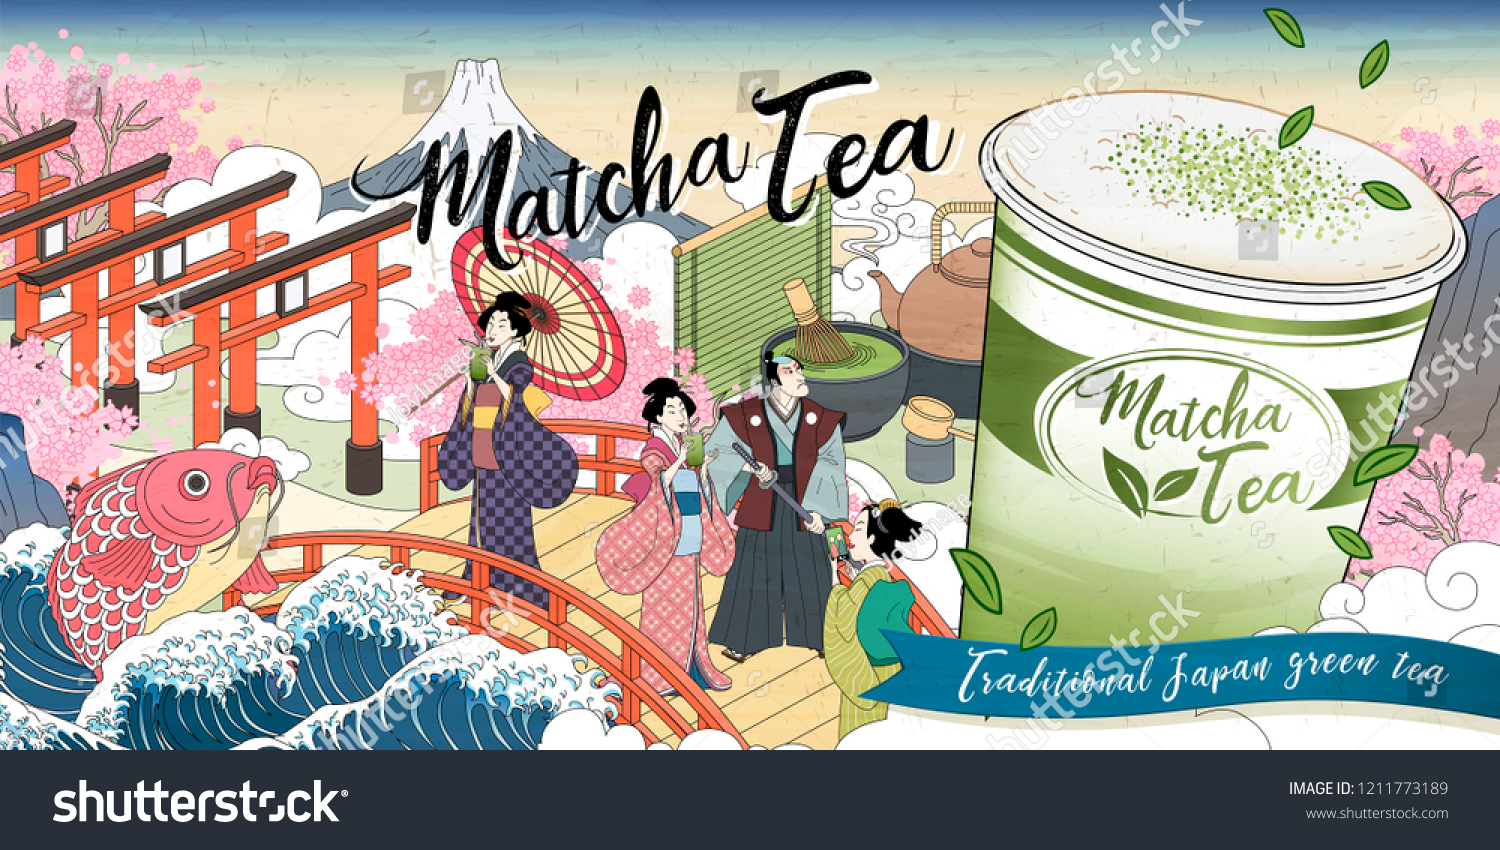 Ukiyoe Matcha Tea Ads Giant Takeaway Stock Vector Royalty Free